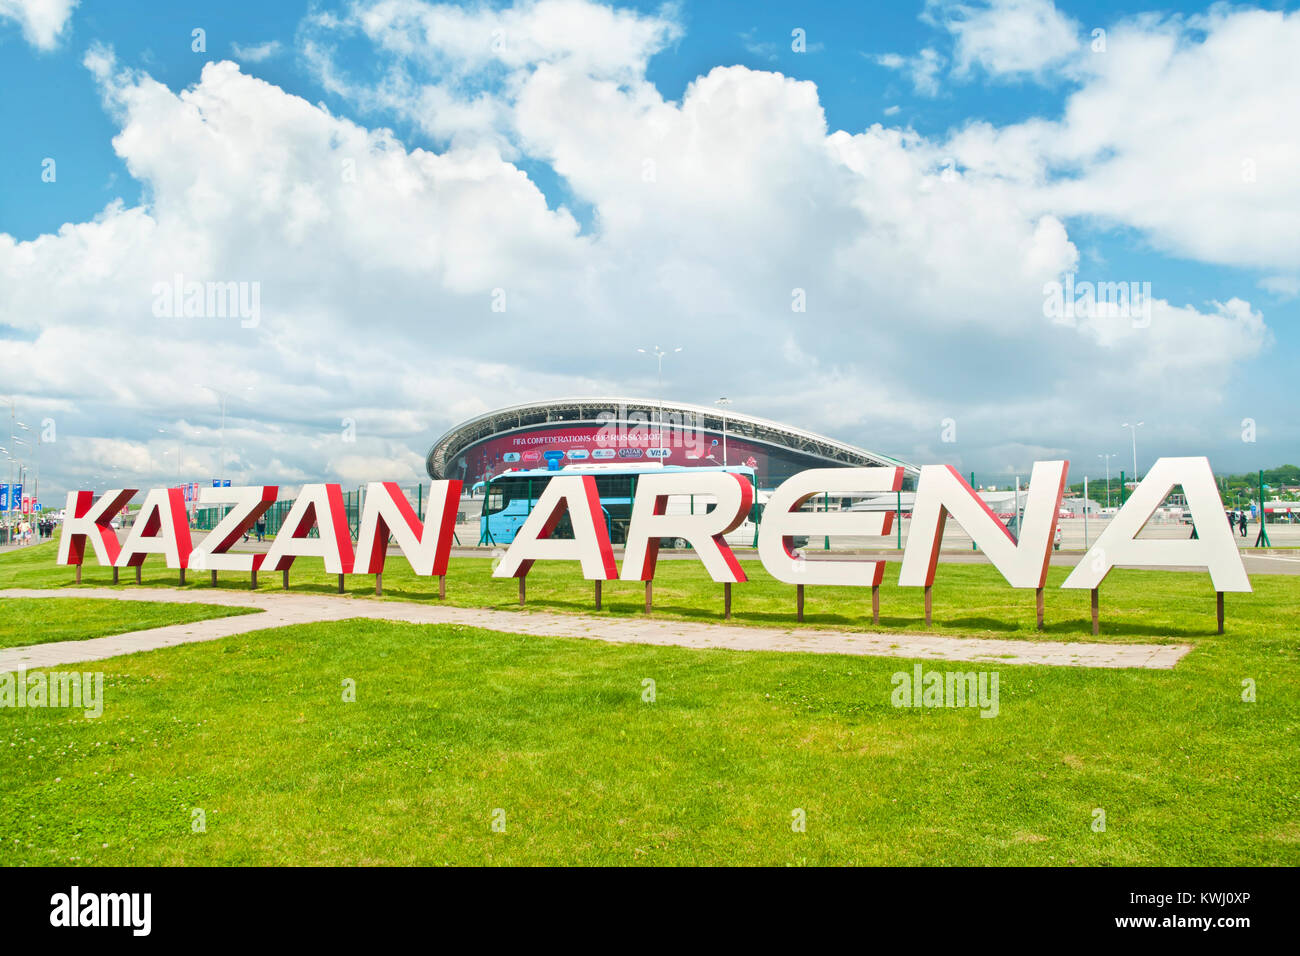 KAZAN, RUSSIE - 18 juin 2017 : grand panneau disant Kazan Arena sur la pelouse en face de Kazan Arena Stadium lors de la Coupe des Confédérations de la FIFA Banque D'Images